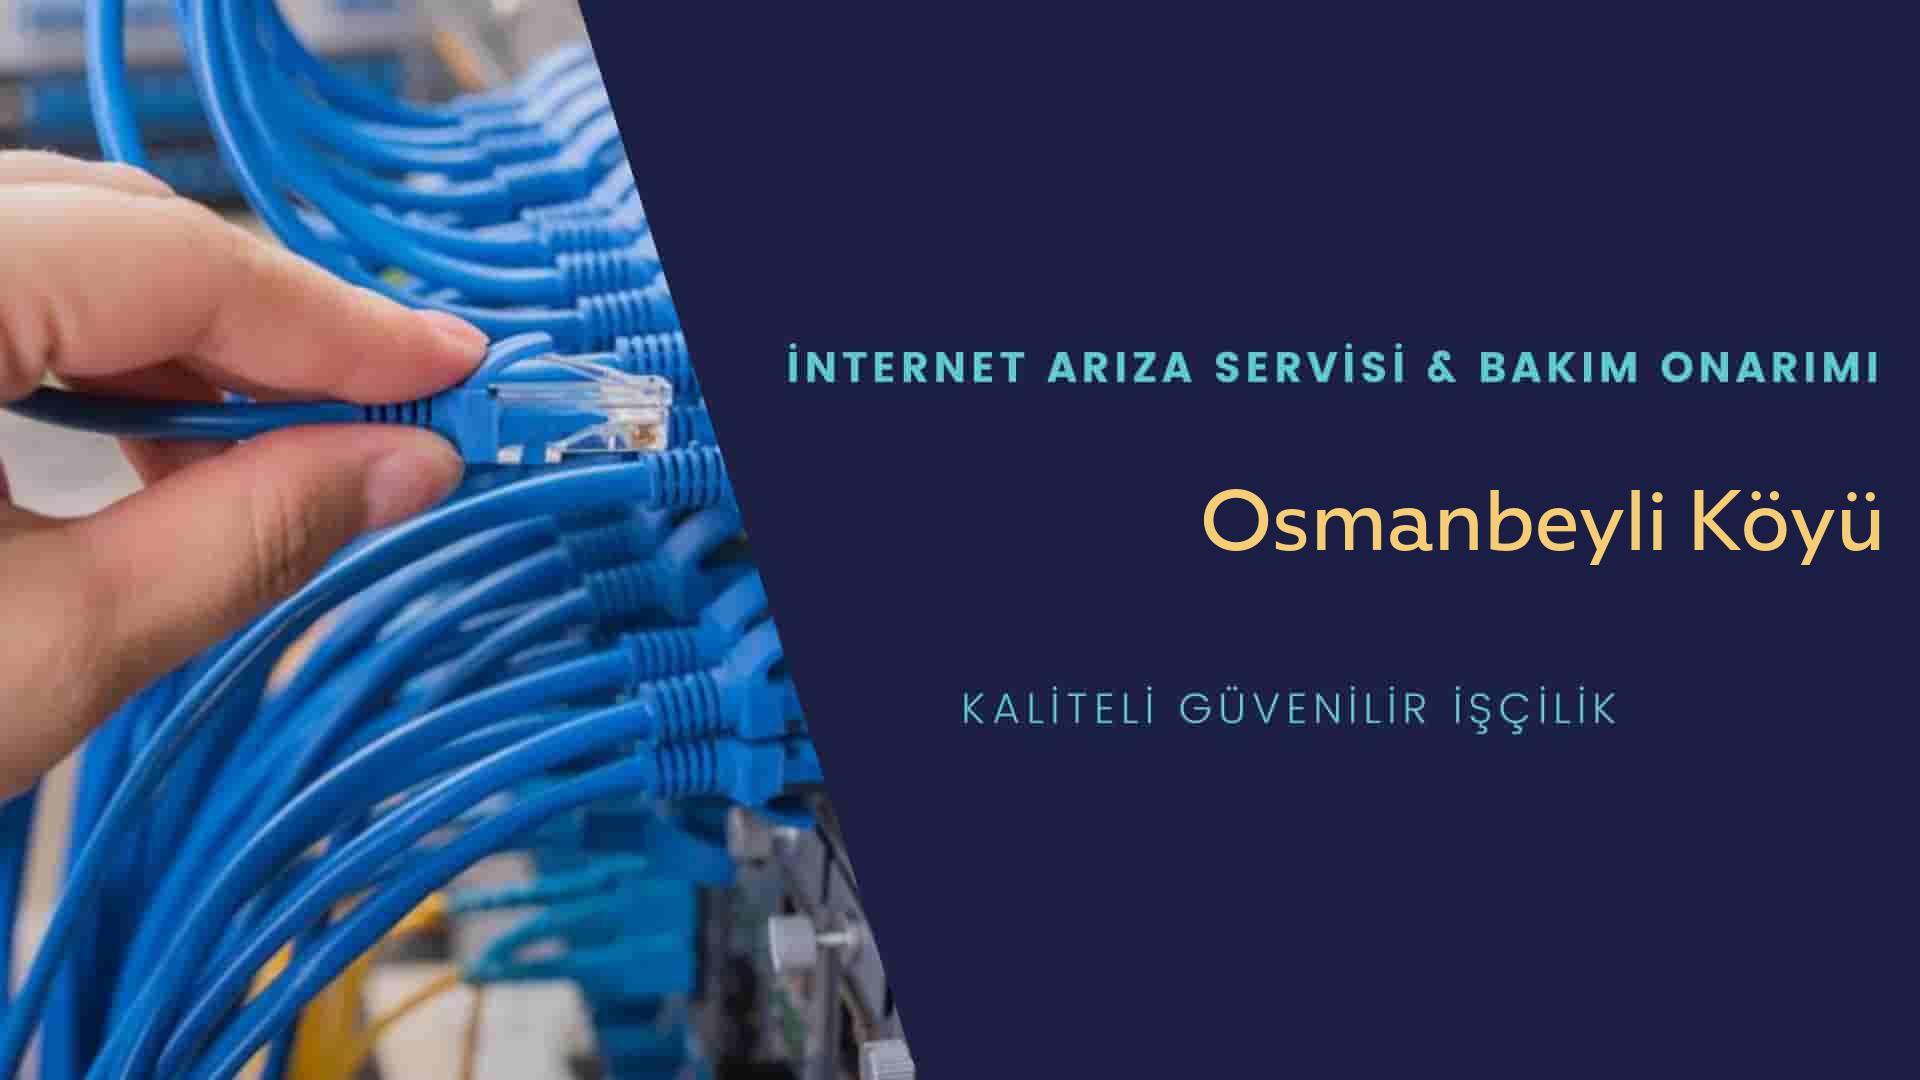 Osmanbeyli Köyü internet kablosu çekimi yapan yerler veya elektrikçiler mi? arıyorsunuz doğru yerdesiniz o zaman sizlere 7/24 yardımcı olacak profesyonel ustalarımız bir telefon kadar yakındır size.